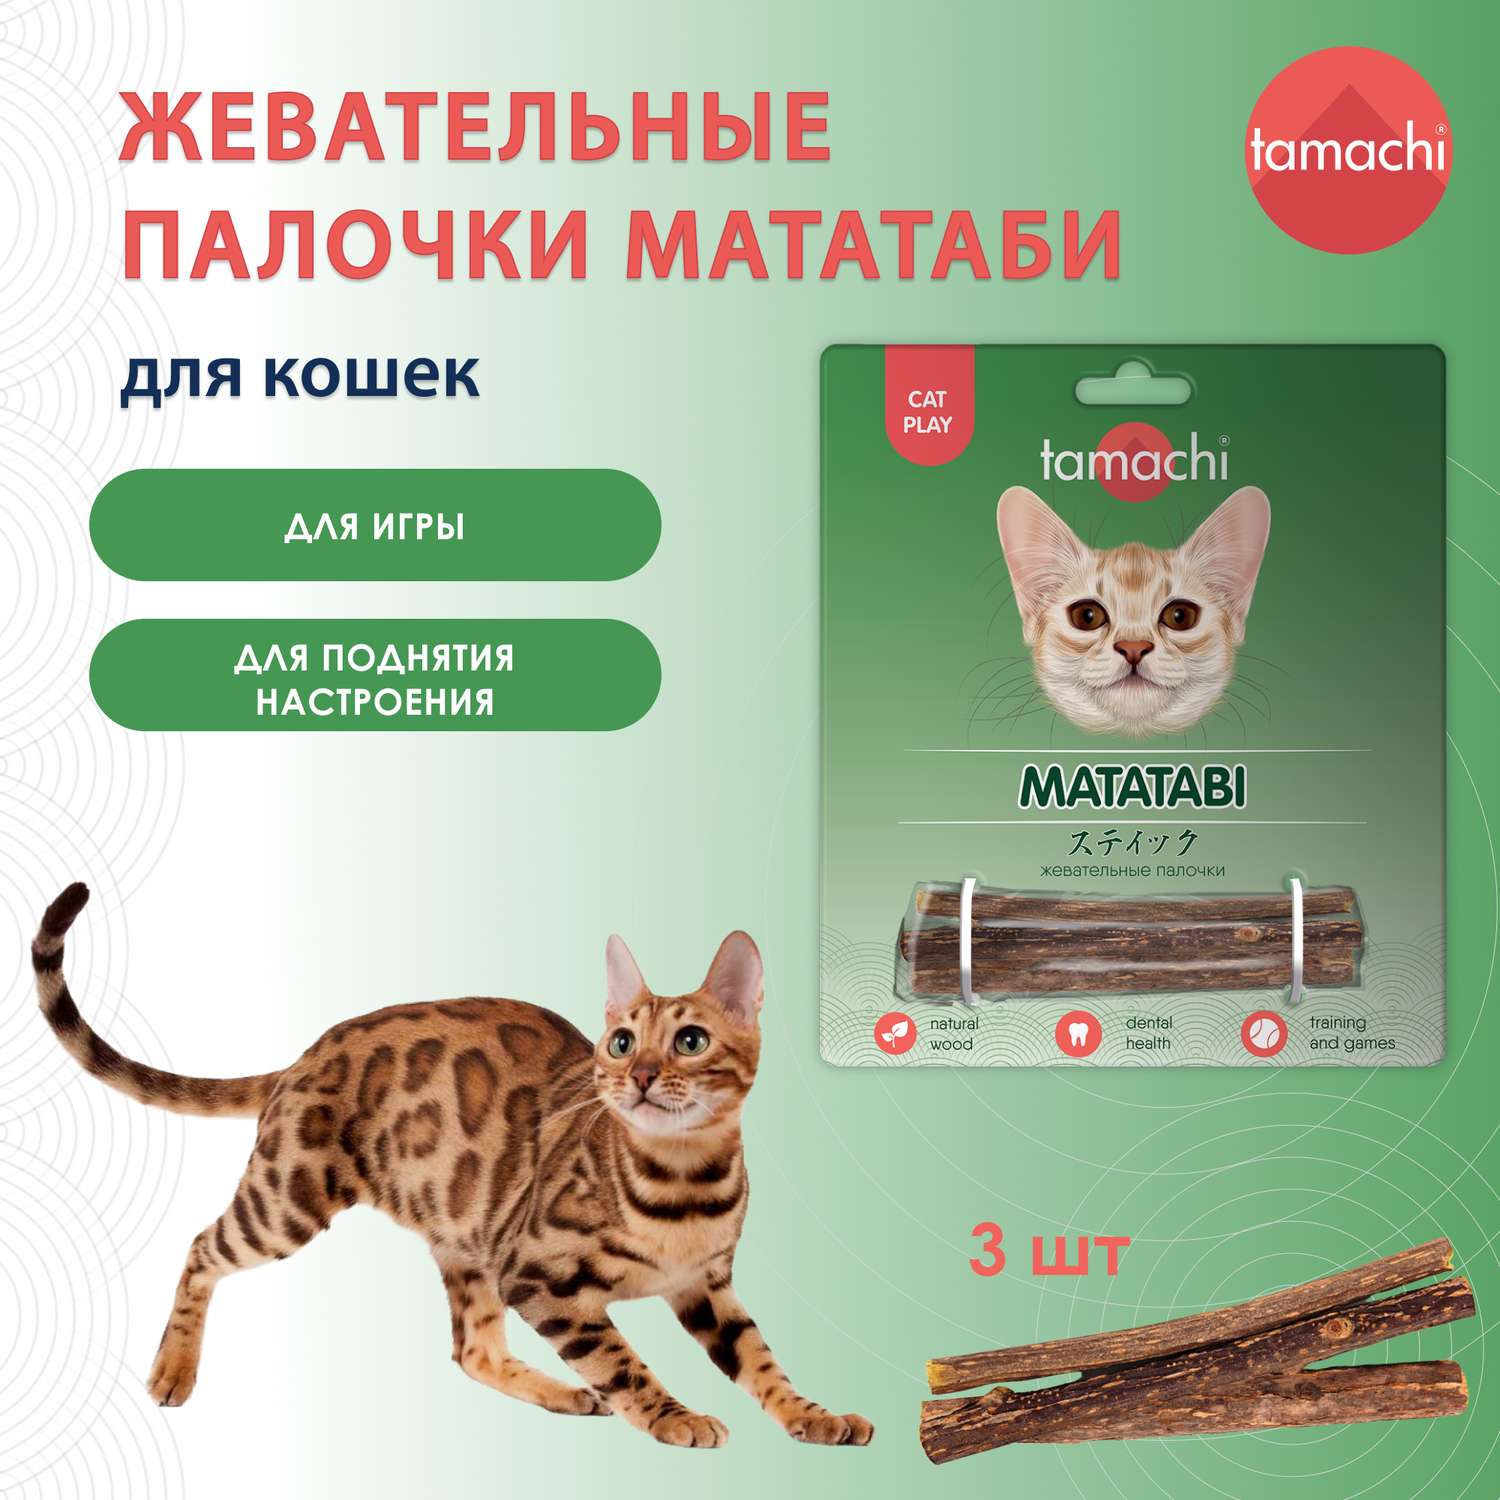 Игрушка для кошек Tamachi Мататаби жевательные палочки 3шт купить по цене  330 ₽ с доставкой в Москве и России, отзывы, фото